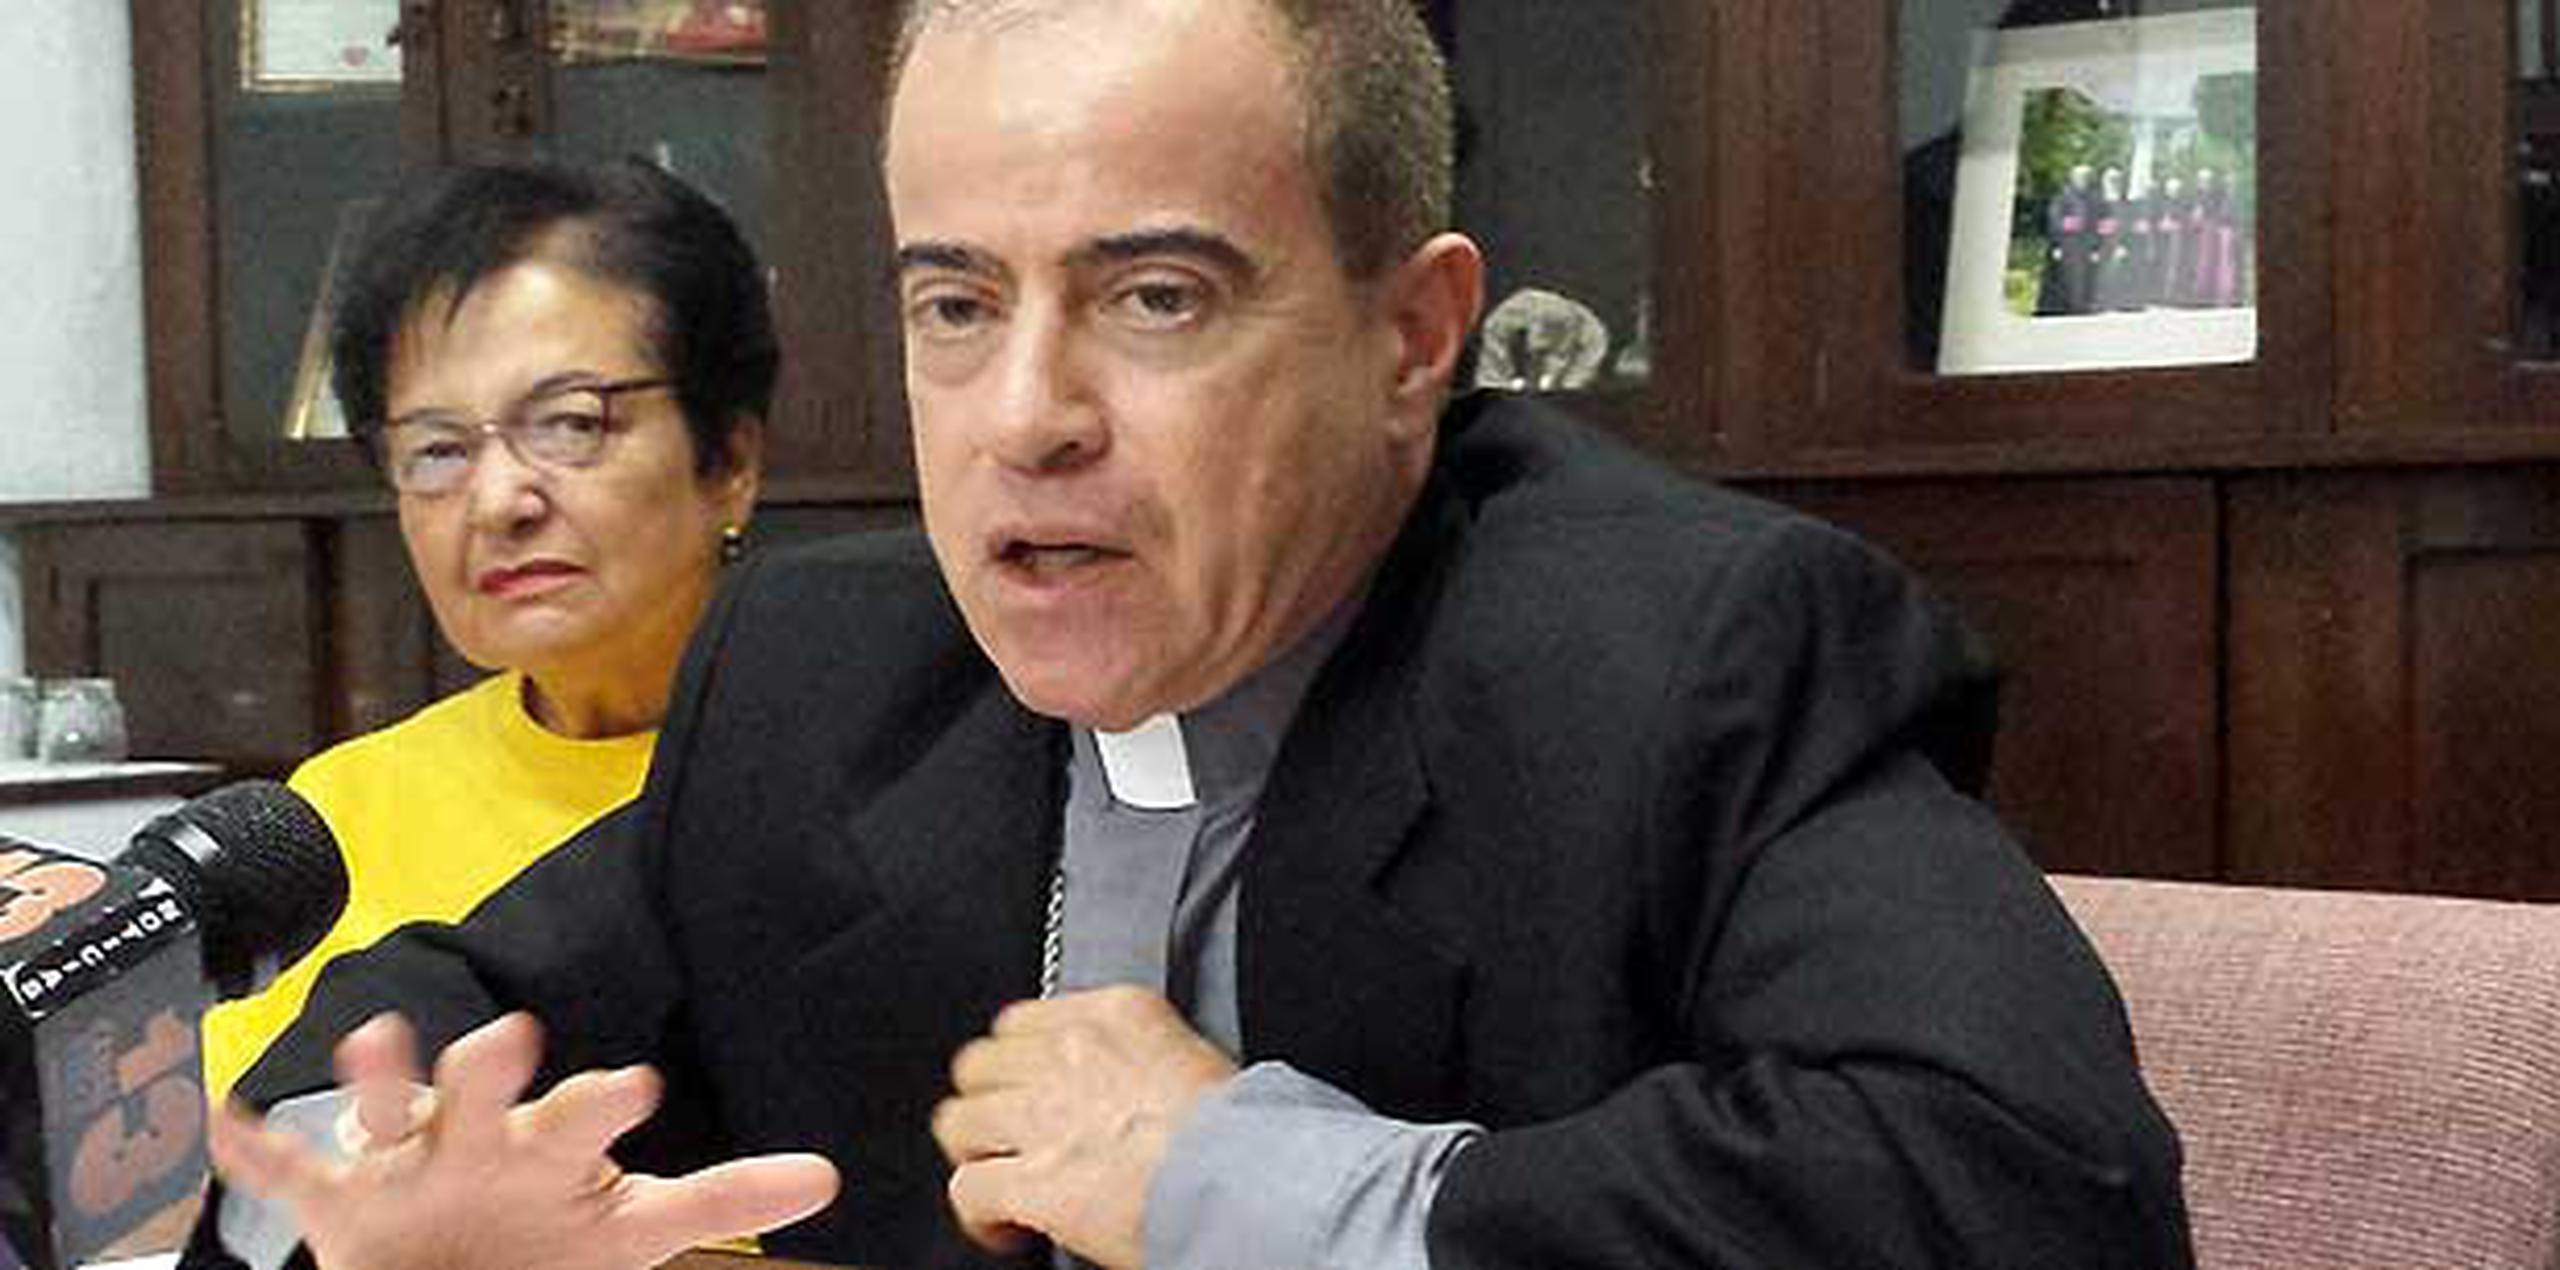 El arzobispo Roberto González Nieves le pidió al pueblo que se una en oración “por el pueblo de Dios y por la Diócesis de Arecibo. (gerald.lopez@gfrmedia.com)